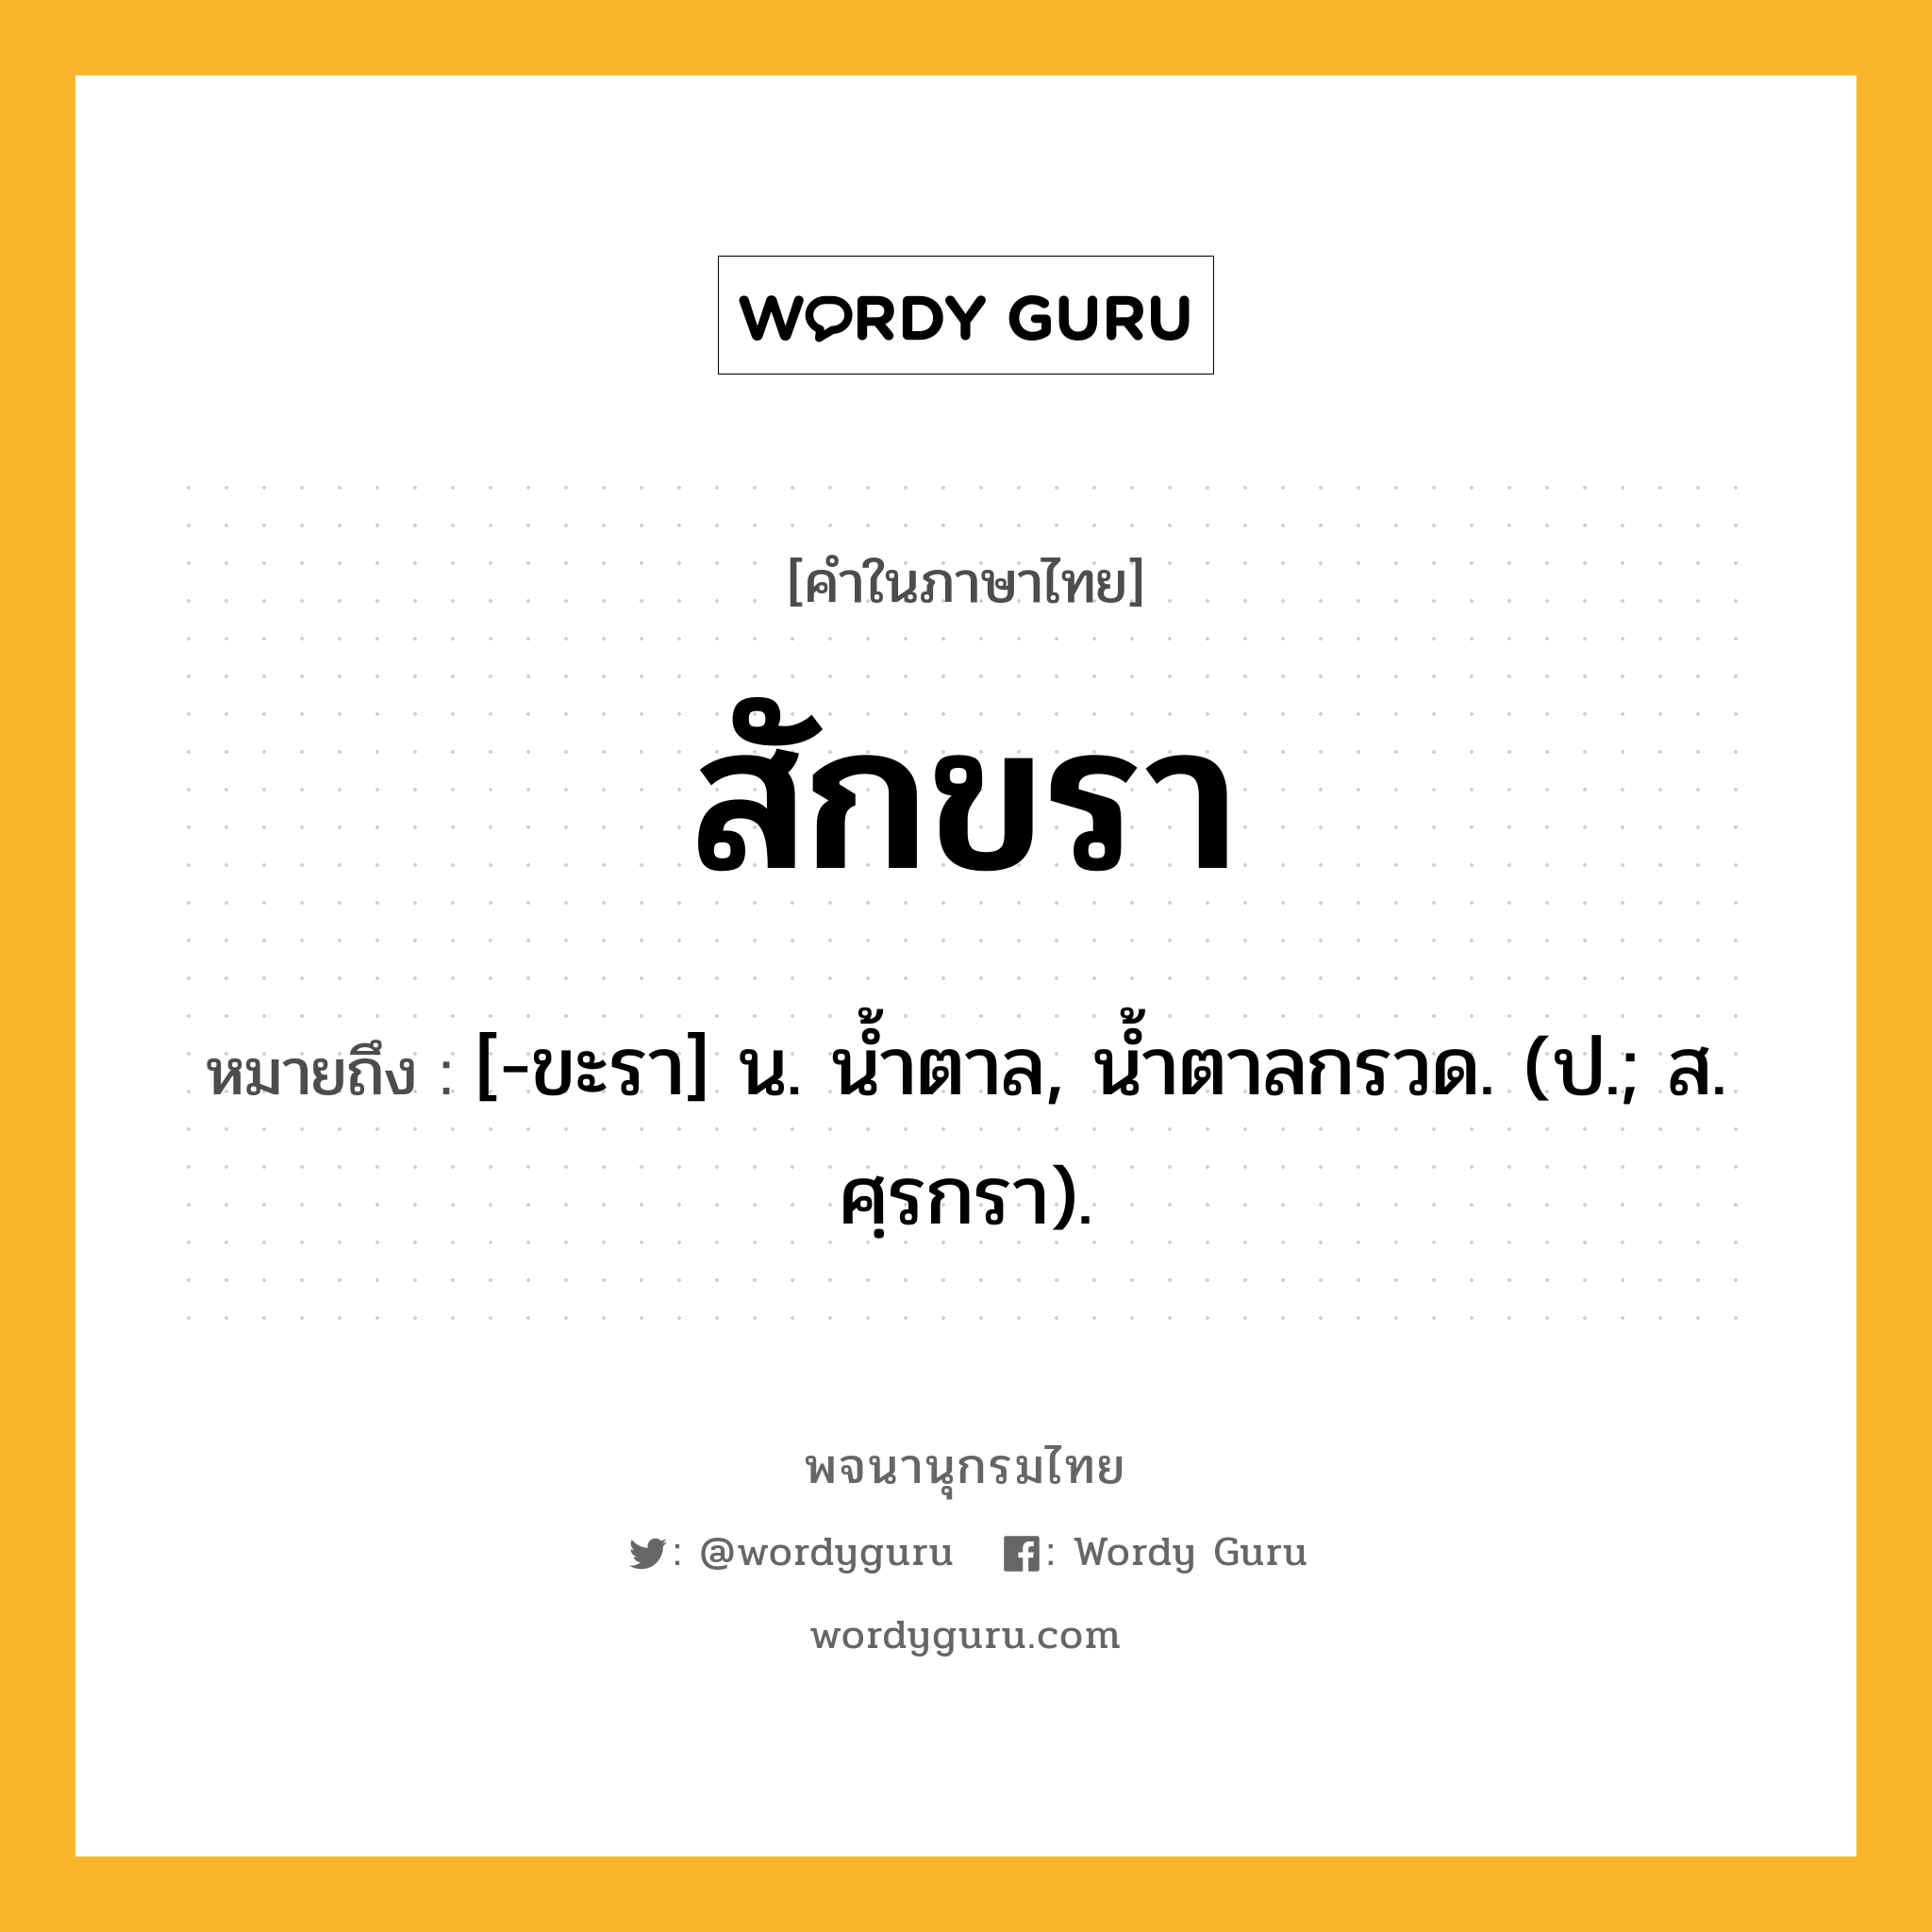 สักขรา ความหมาย หมายถึงอะไร?, คำในภาษาไทย สักขรา หมายถึง [-ขะรา] น. นํ้าตาล, นํ้าตาลกรวด. (ป.; ส. ศฺรกรา).